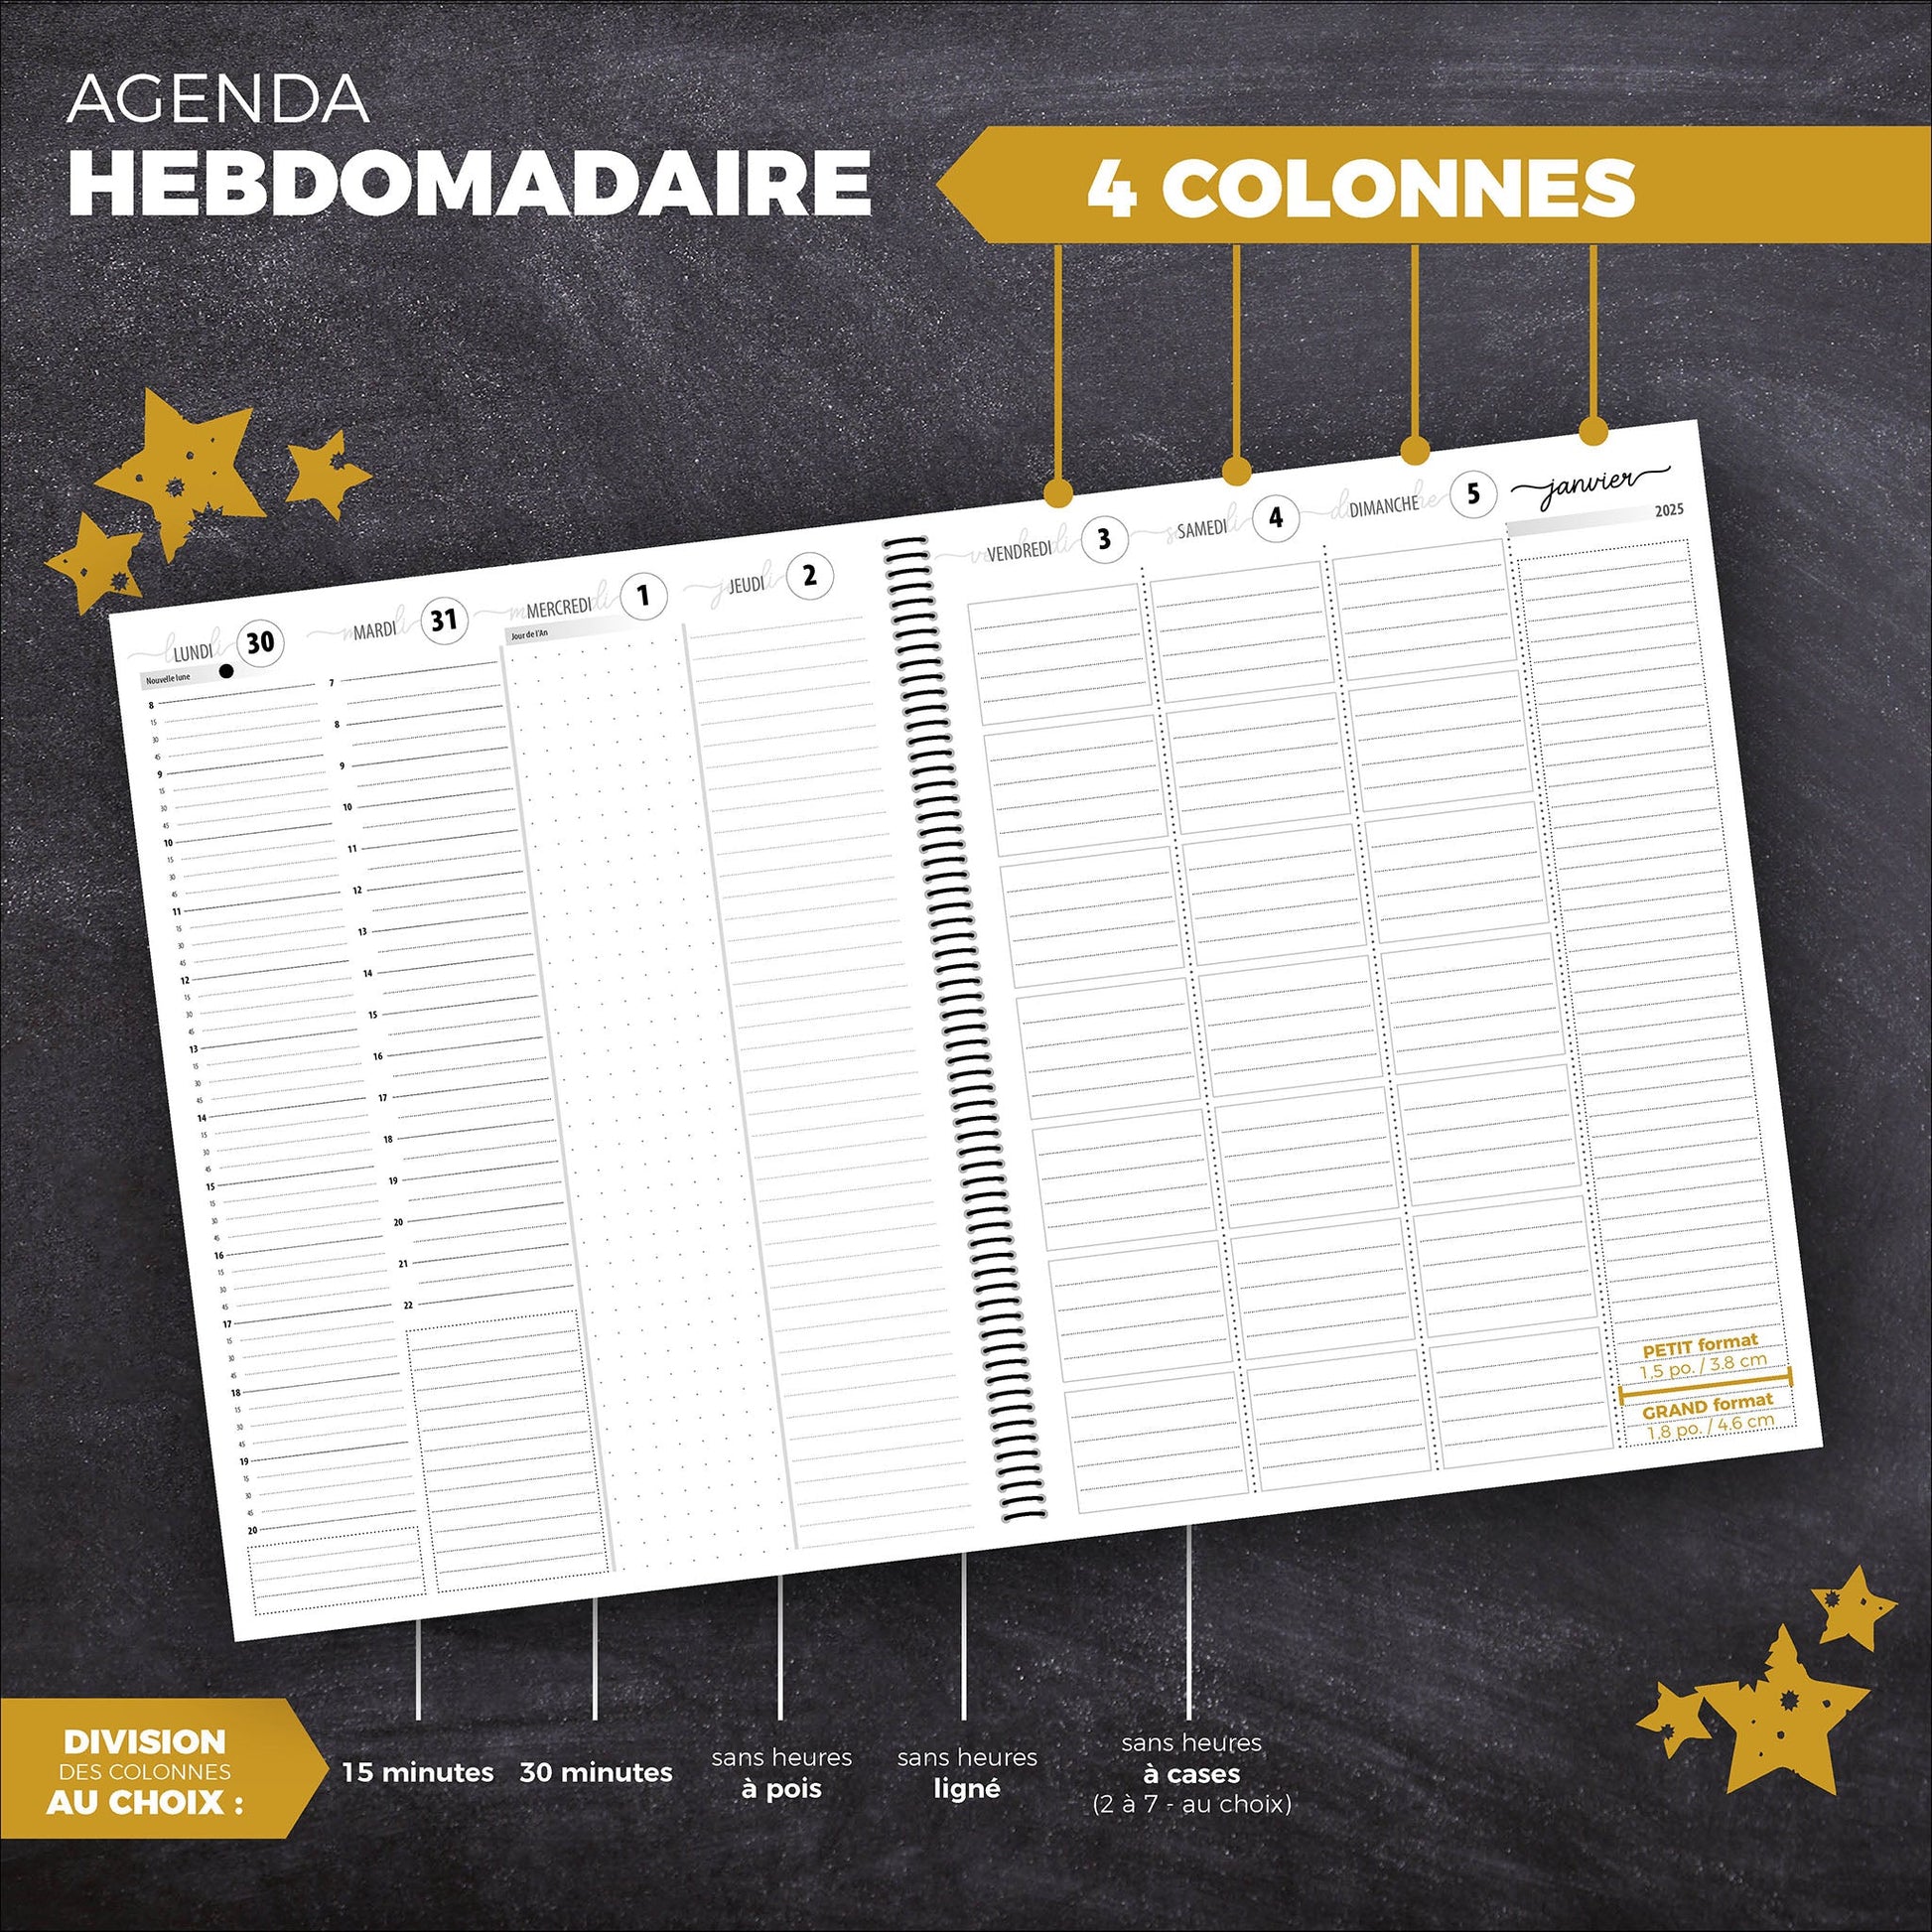 Agenda HEBDOMADAIRE | 4 colonnes - Papeterie d'Or et d'Étoiles